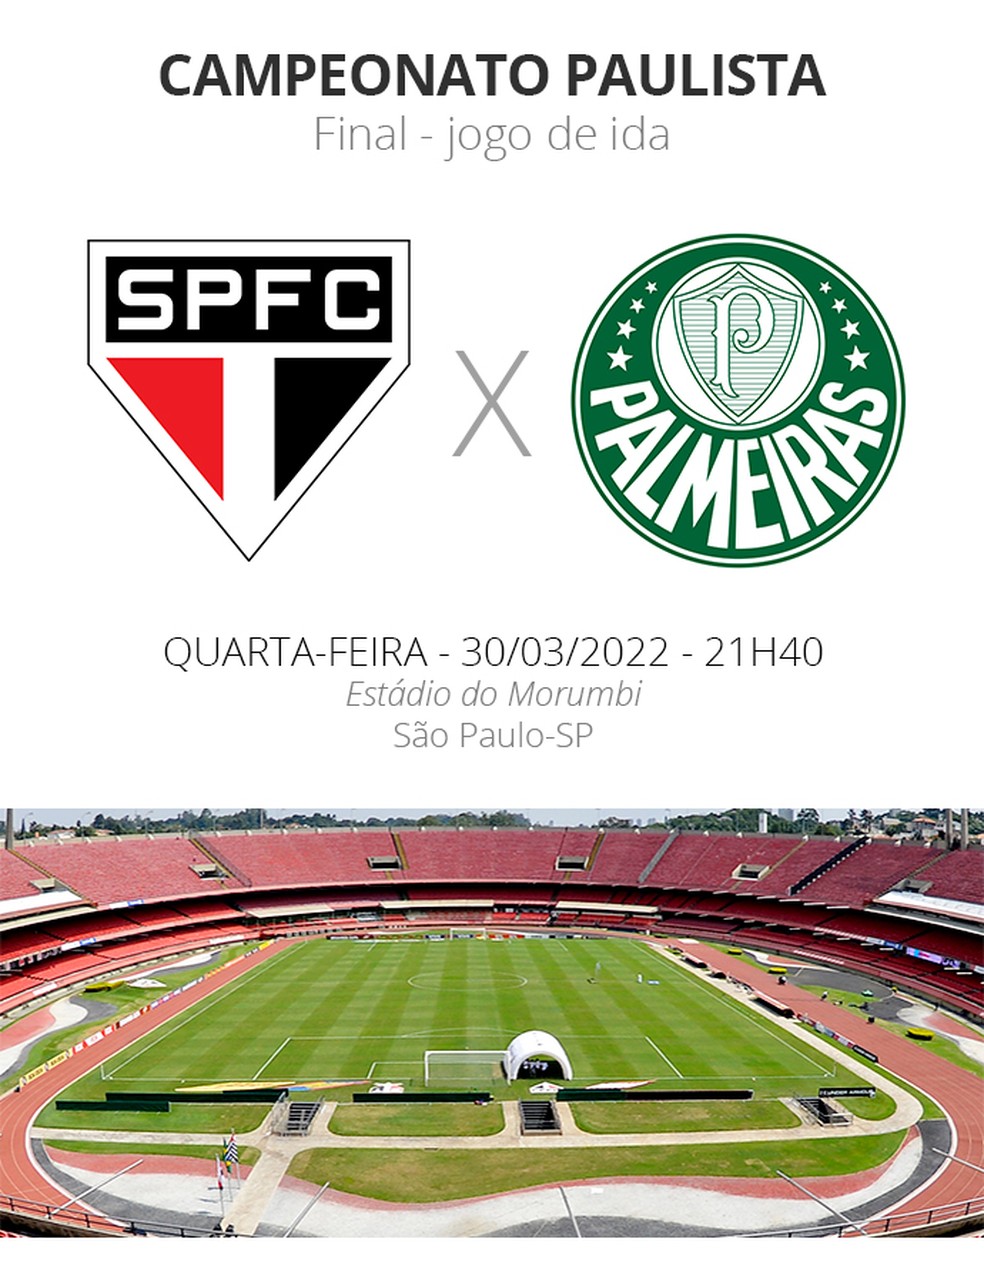 Qual canal vai passar o jogo do PALMEIRAS X SÃO PAULO hoje (13/07